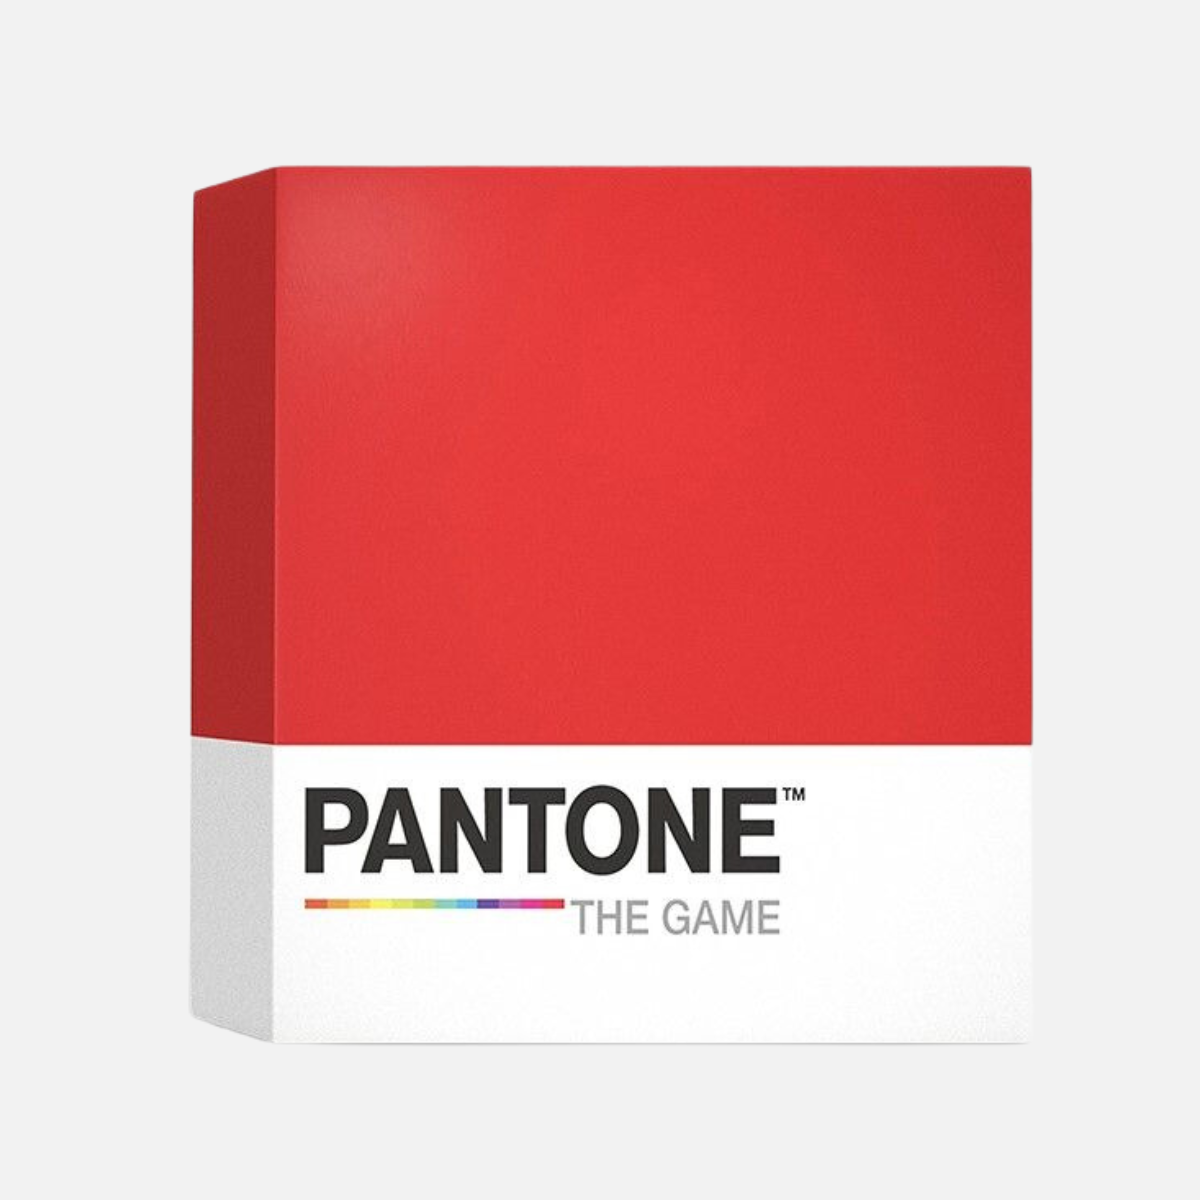 Pantone board game